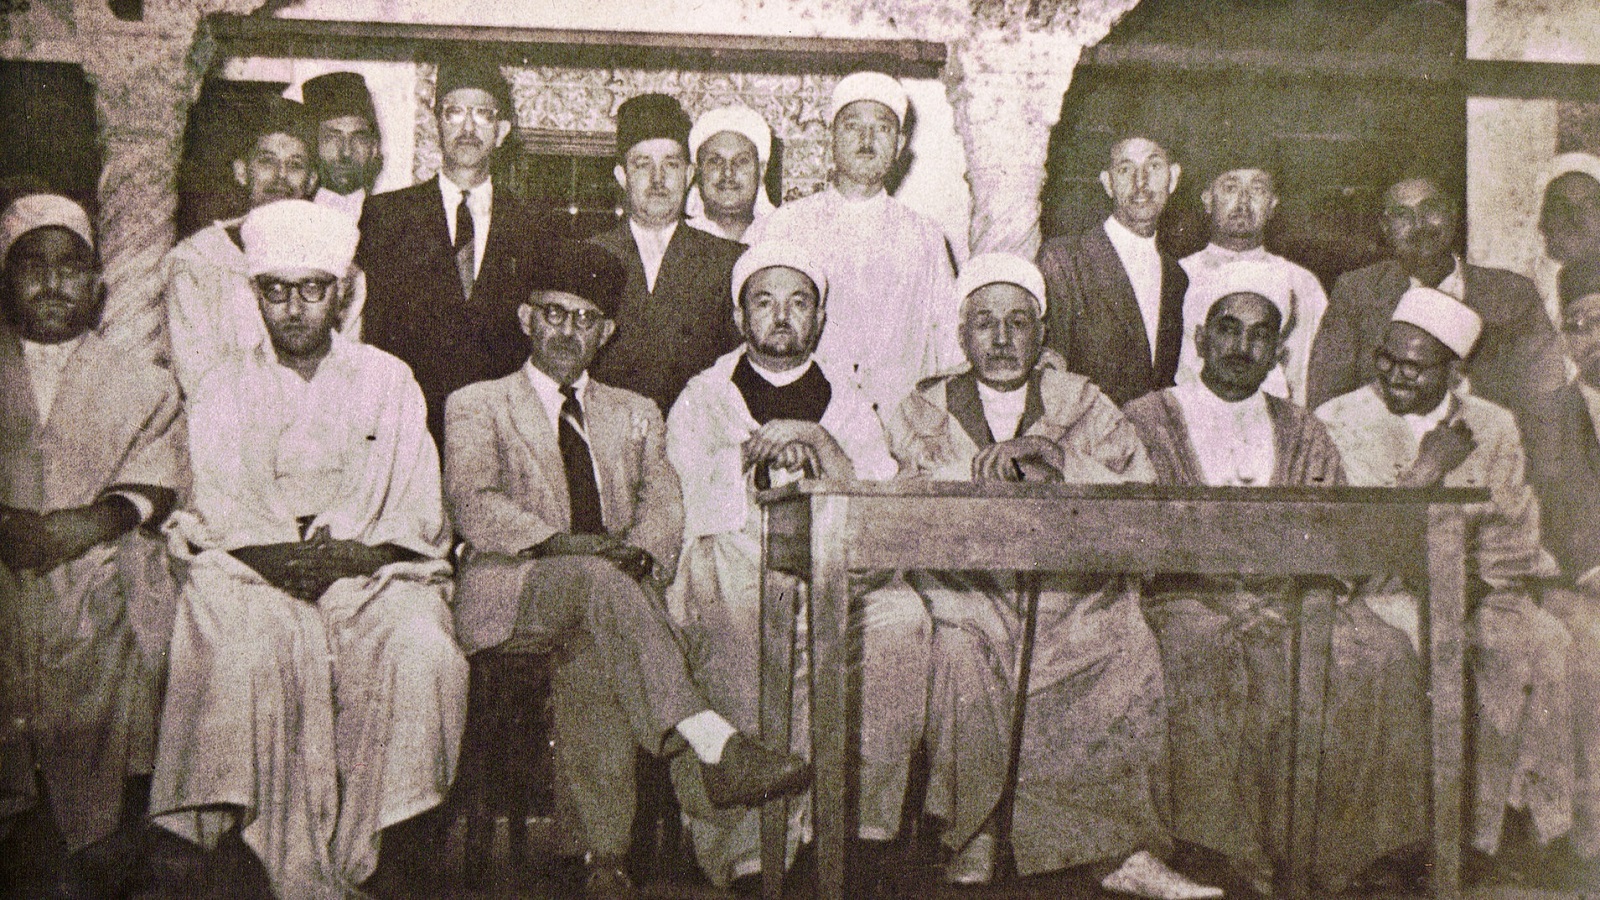 كانت جمعية العلماء المسلمين في الجزائر منذ إنشائها في ثلاثينيات القرن العشرين وحتى انجلاء الاحتلال الفرنسي في الستينيات ثورة ثقافية نشرت اليقظة، وأدت إلى تحولات مفاهيمية في المجتمع